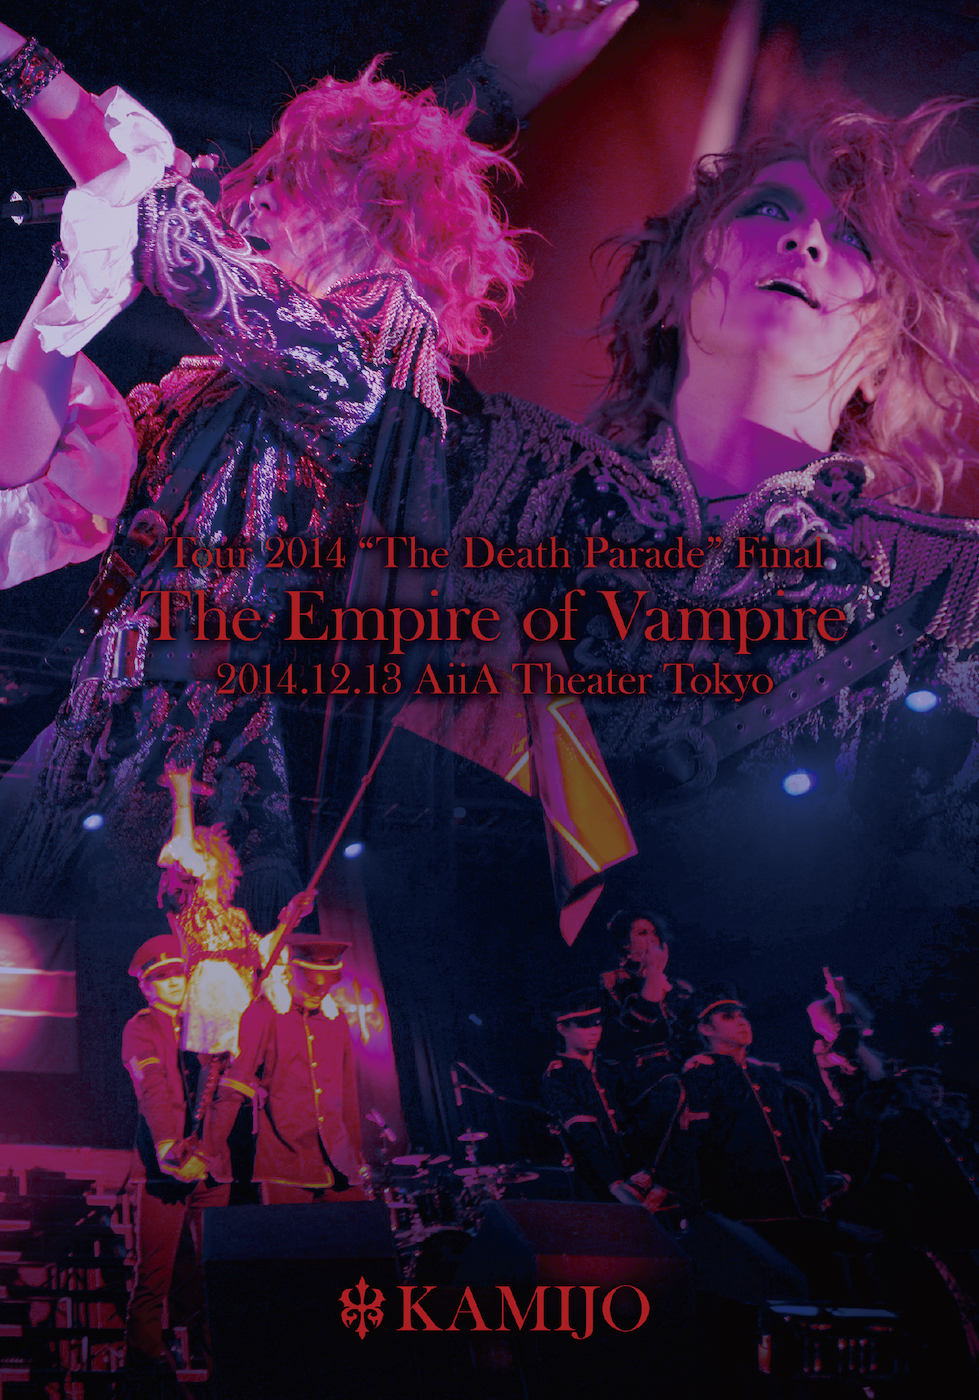 [LIVE DVD] KAMIJO The Empire of Vampire -2014.12.13 AiiA Theater Tokyo- 